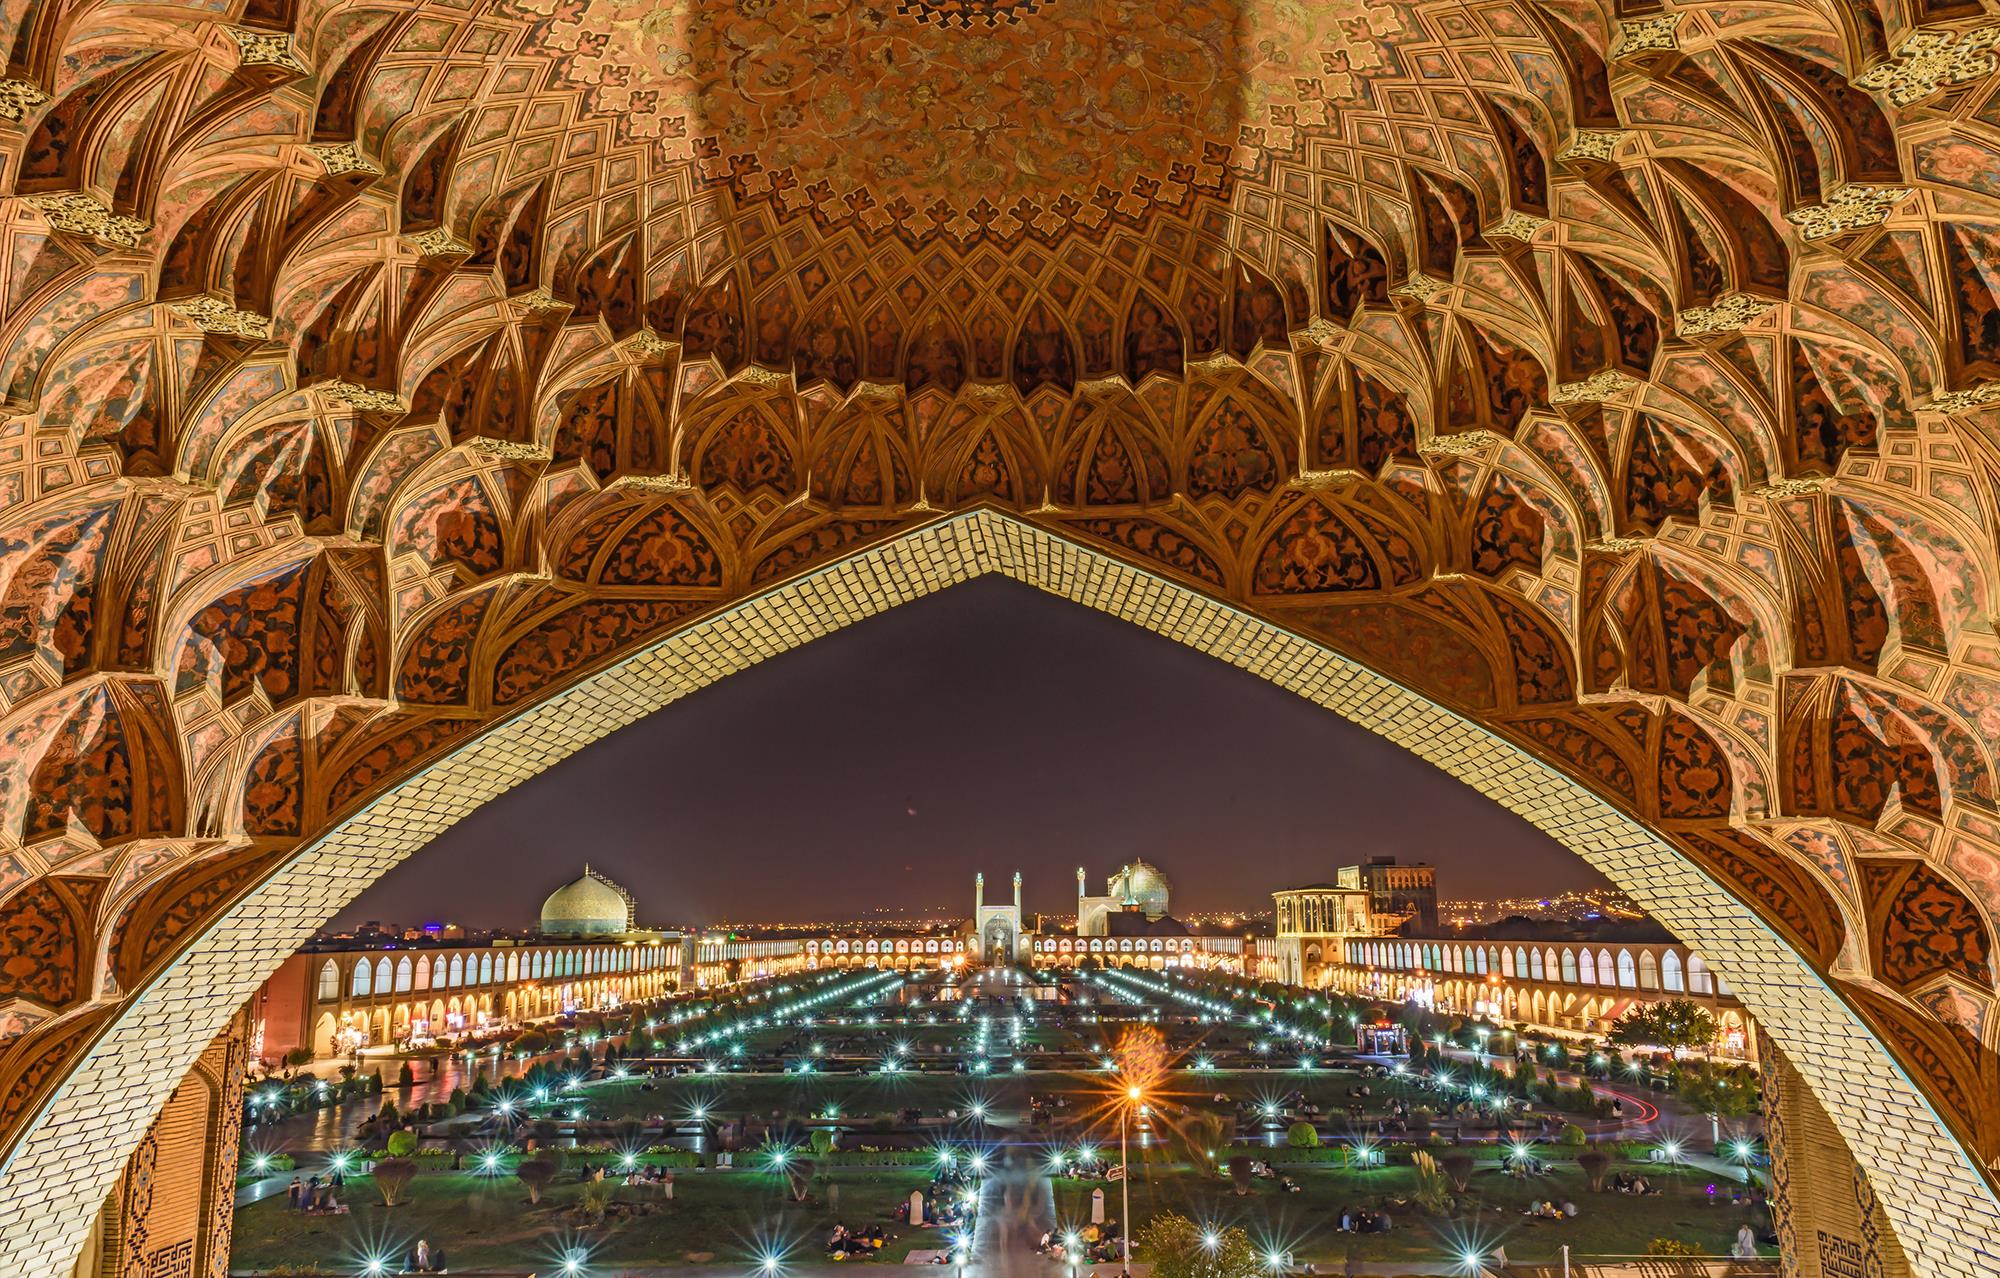 Naghsh Jahan Square in Isfahan at night